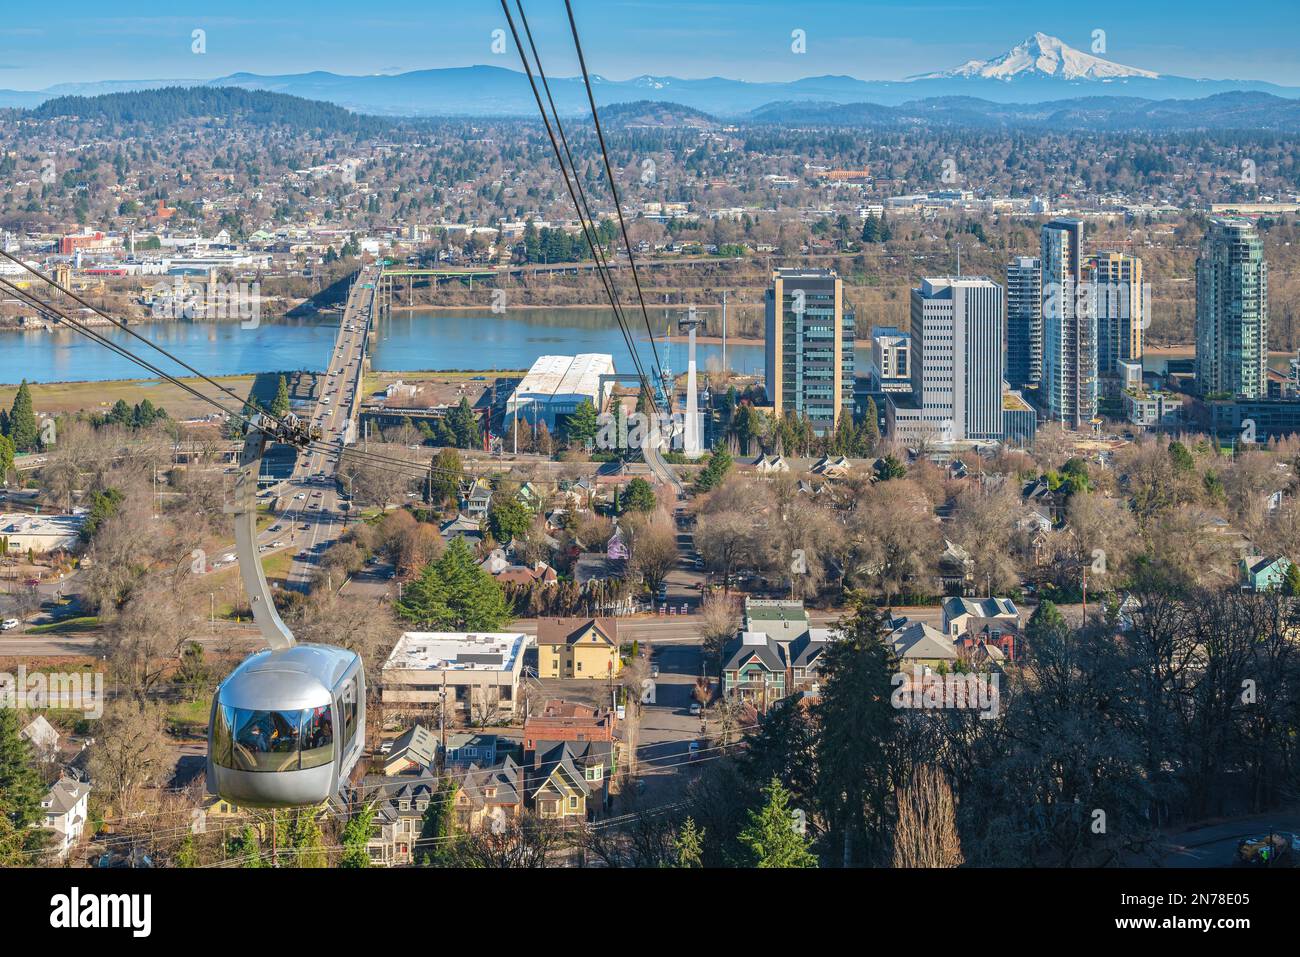 Tramway aérien transportant des personnes jusqu'au sommet de la colline à Portland, Oregon. Banque D'Images